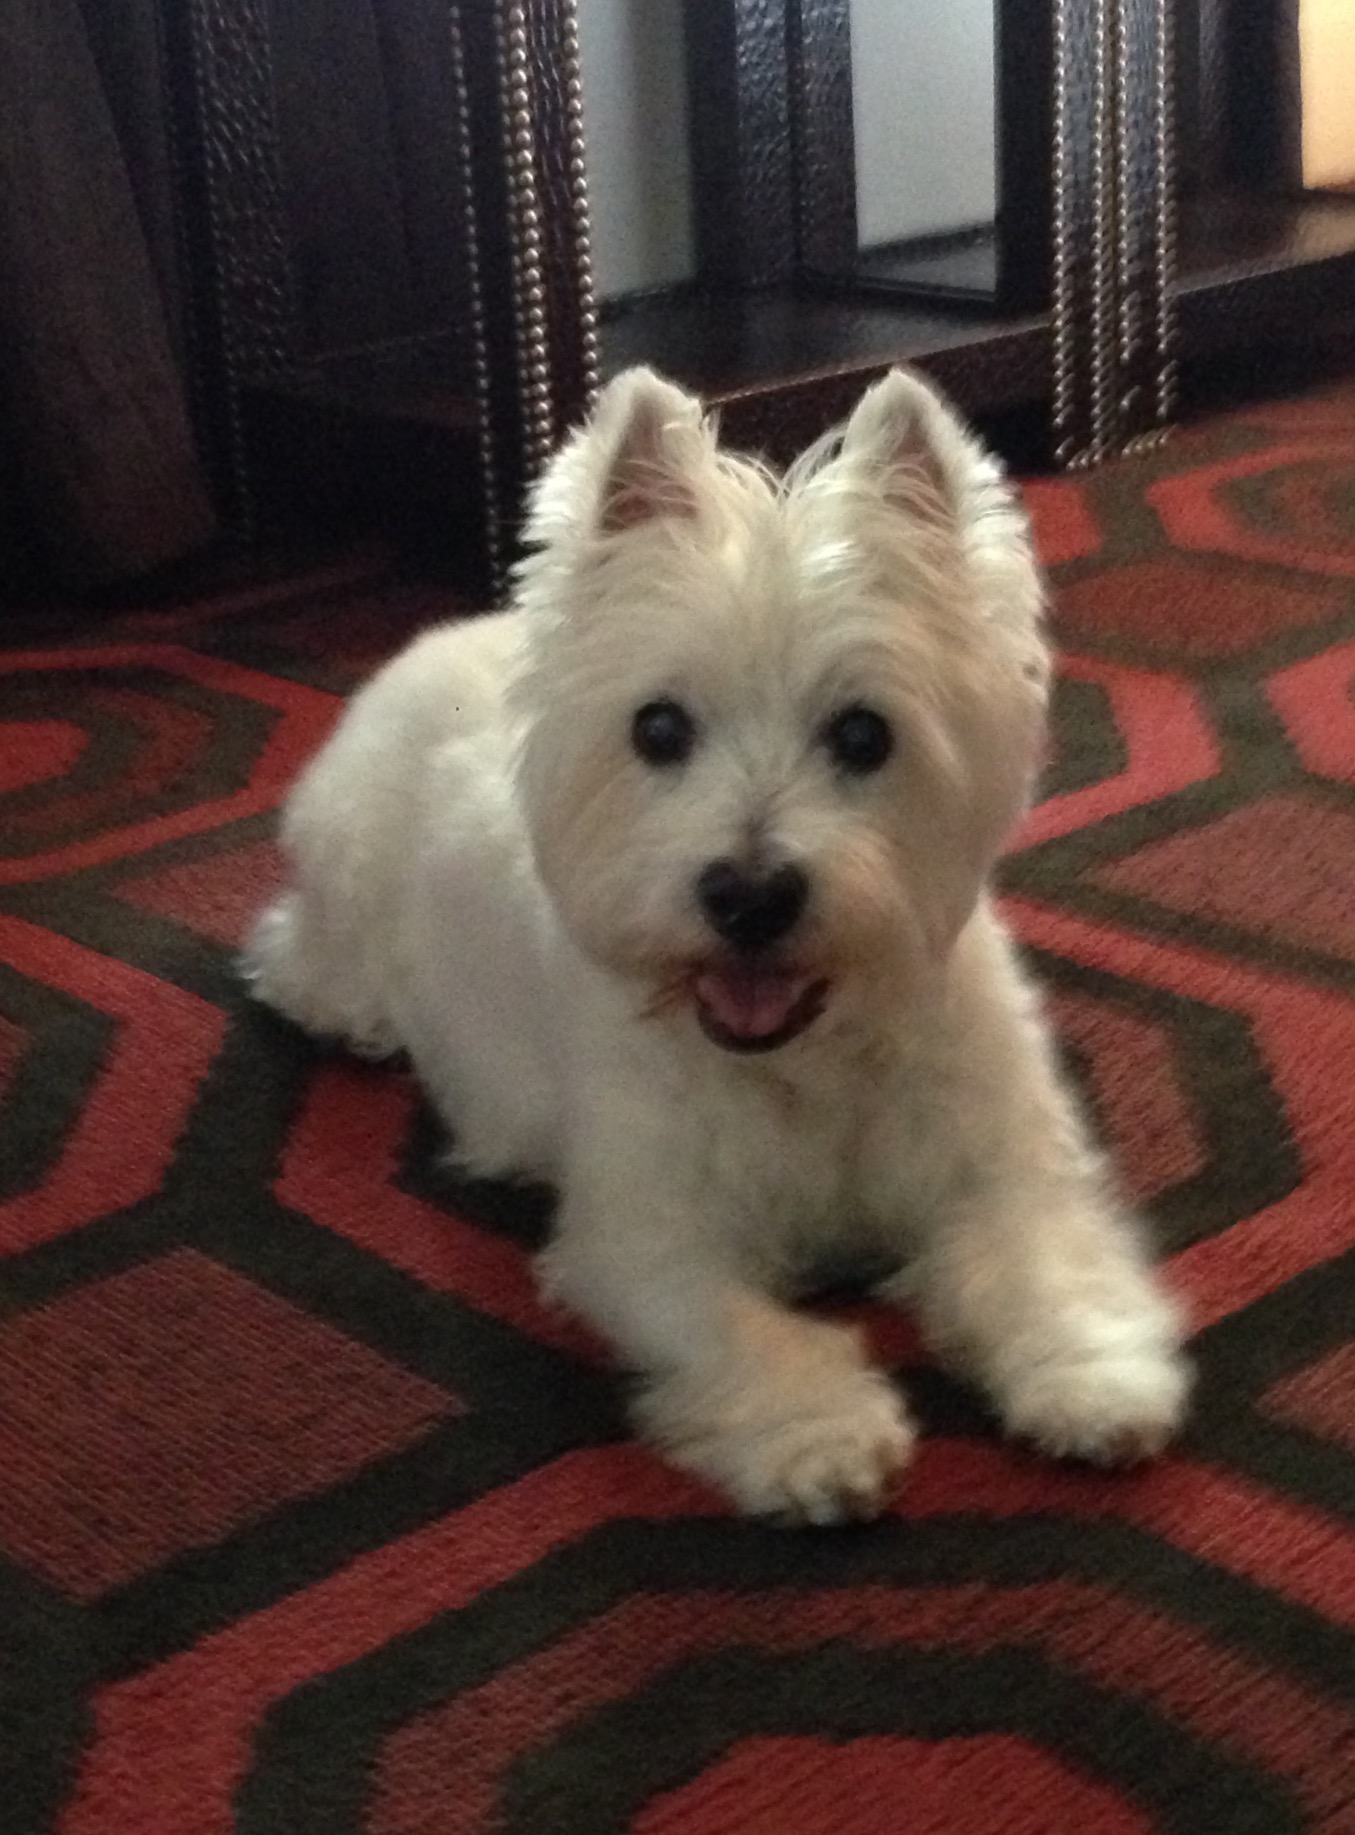 A small white dog smiles on an orange carpet